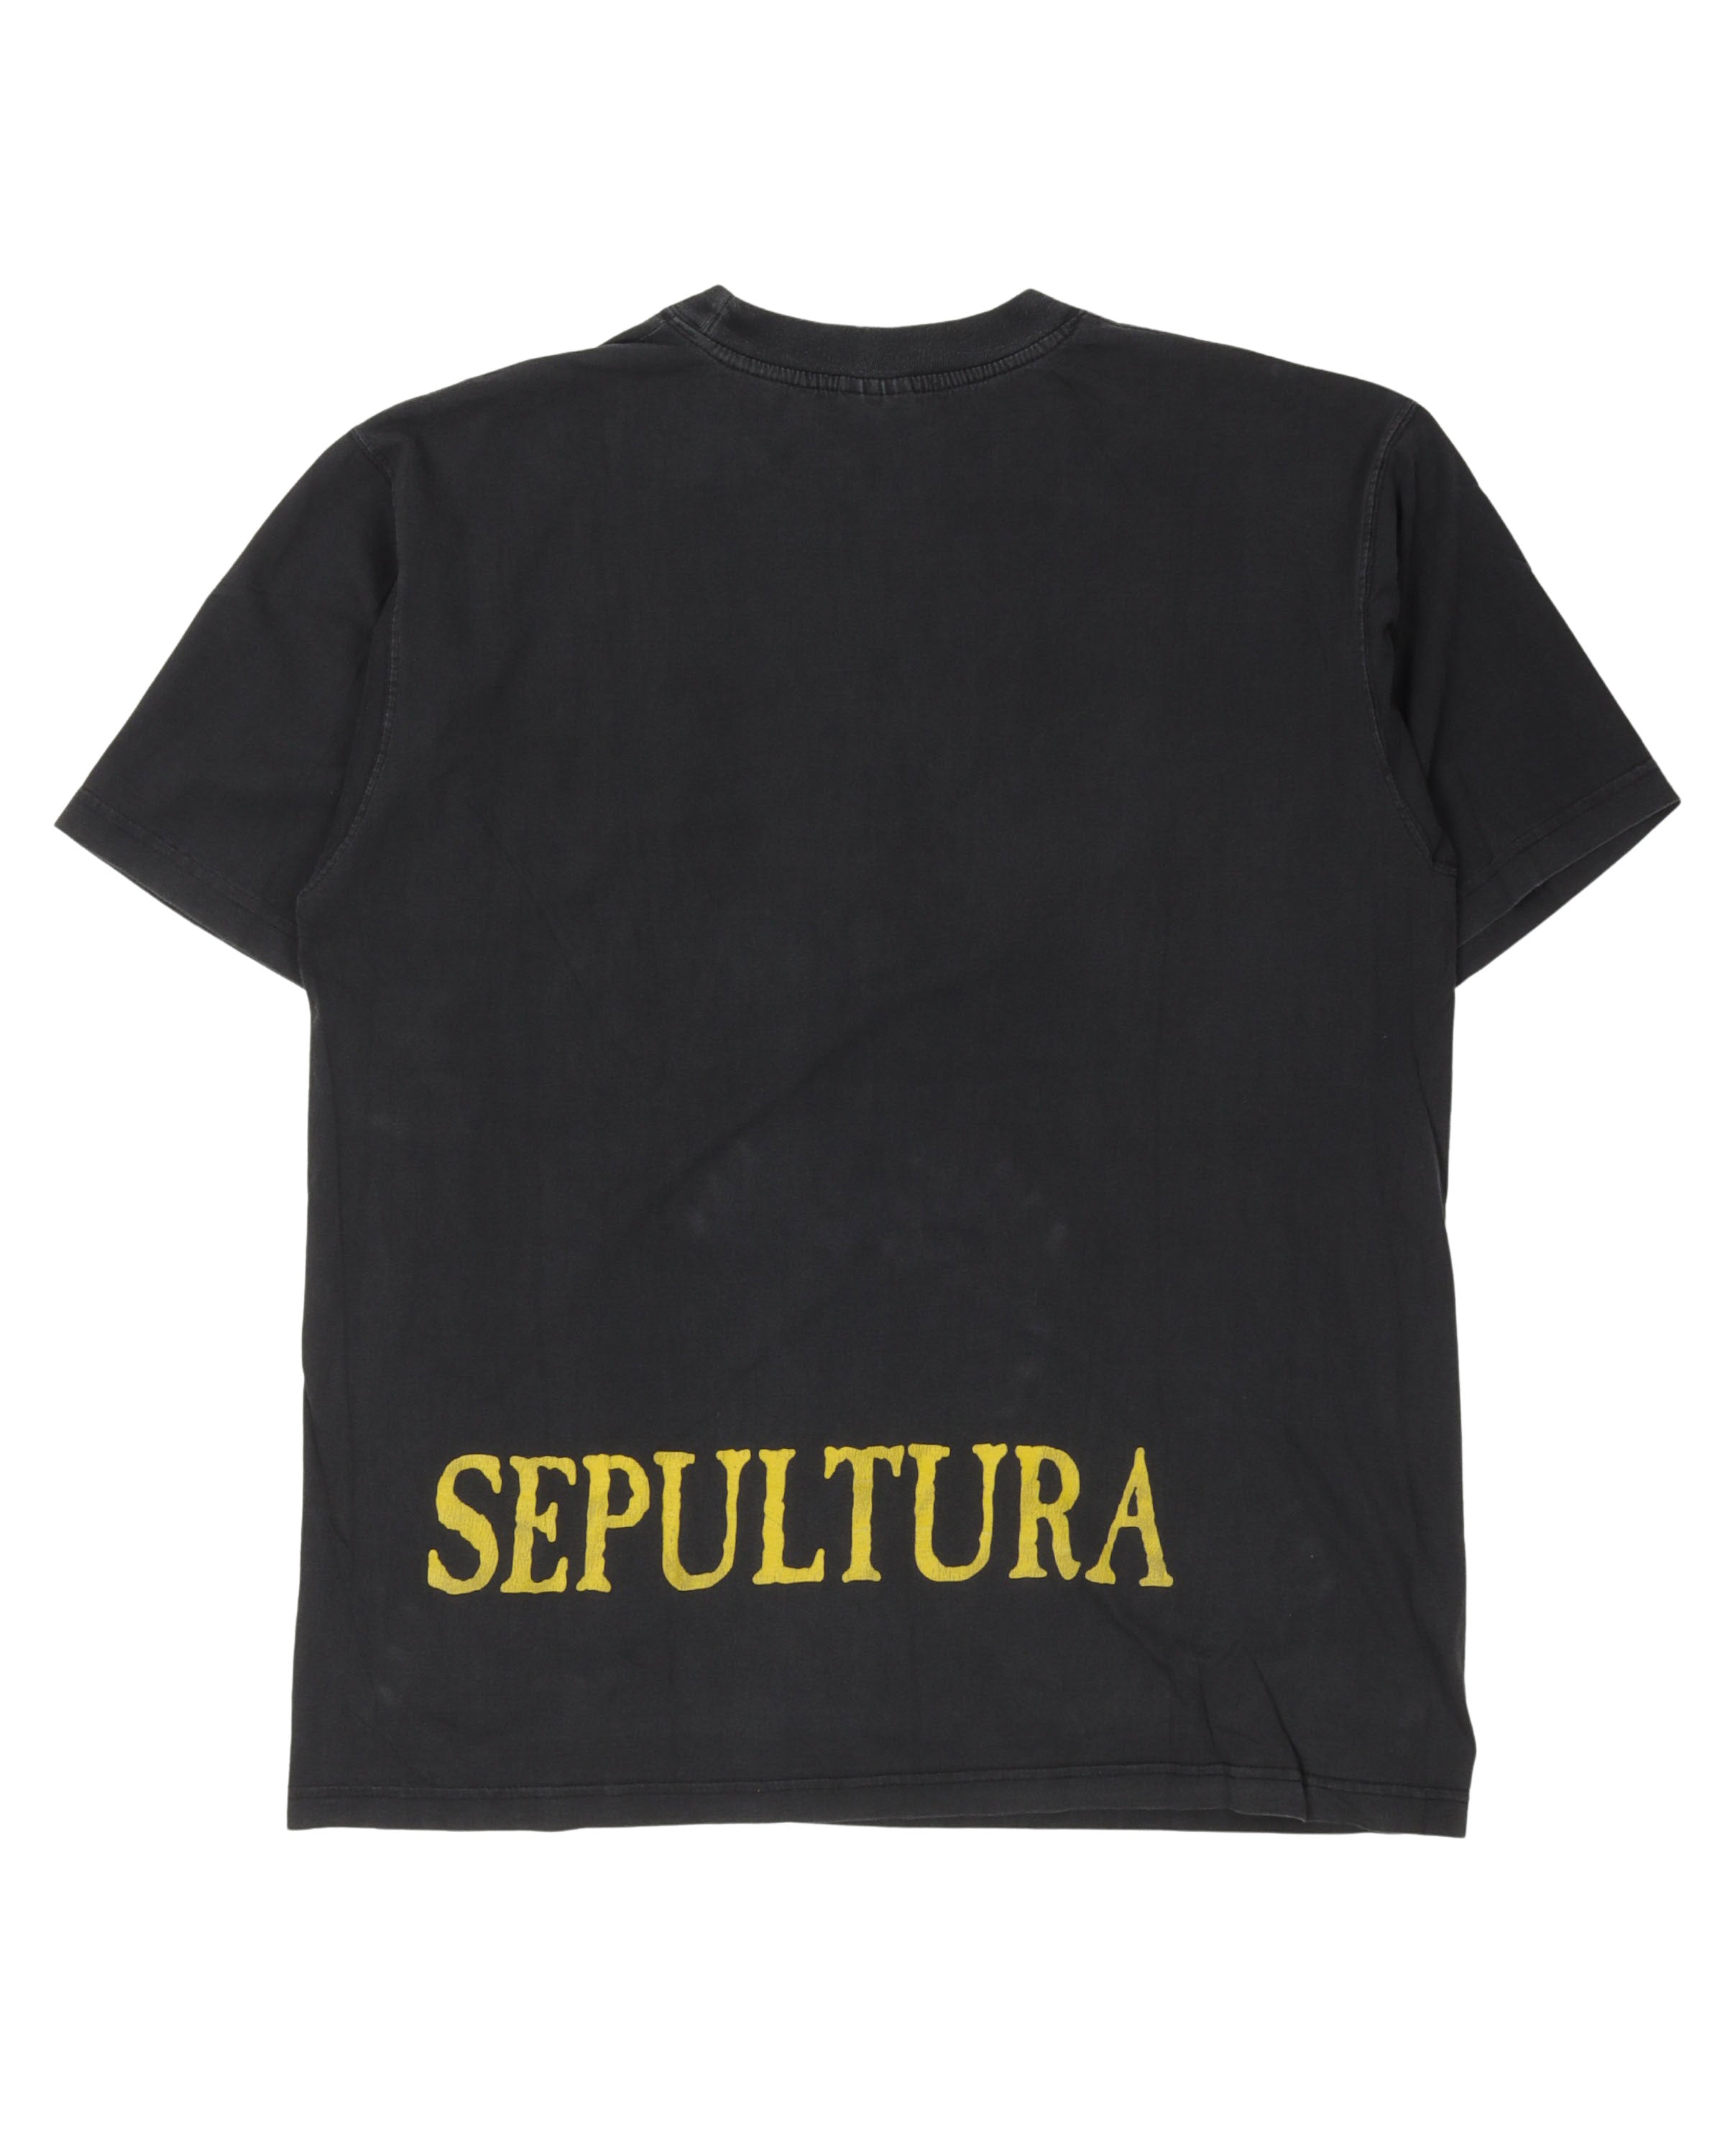 Sepultra Band T-Shirt